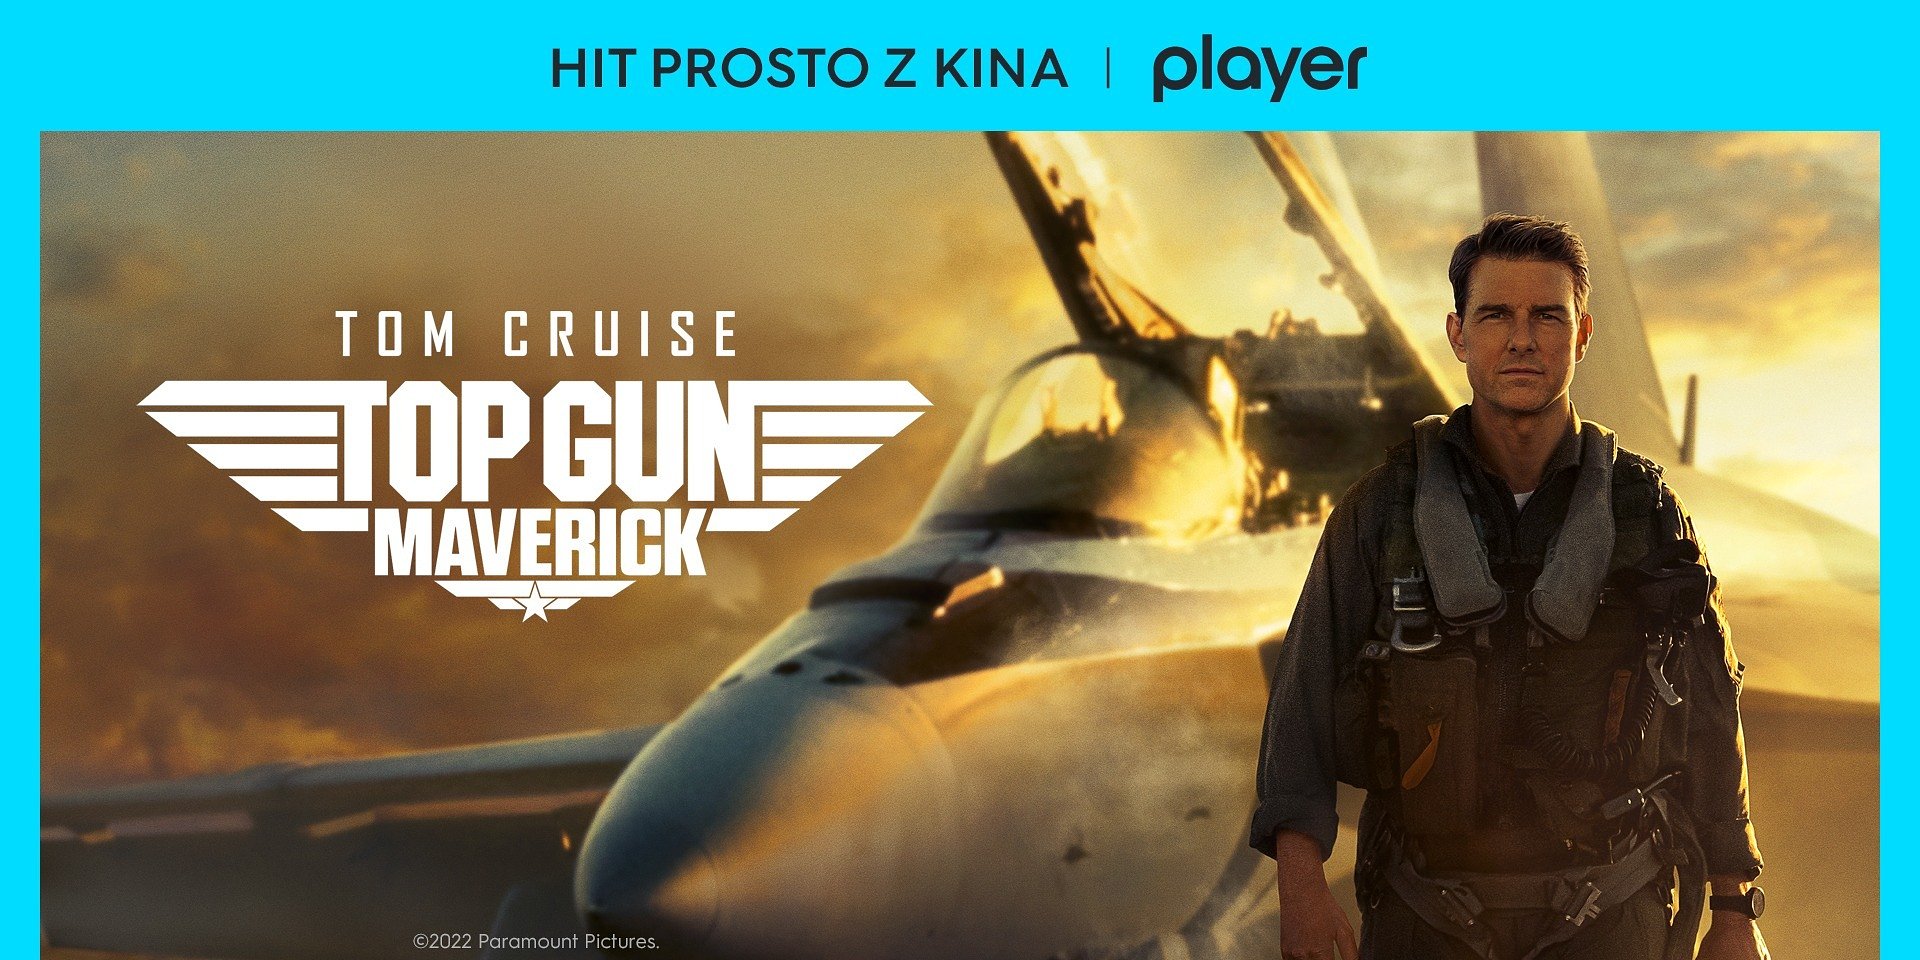 W Player można już oglądać kinowy mega hit “Top Gun: Maverick”! Jak uzyskać dostęp?